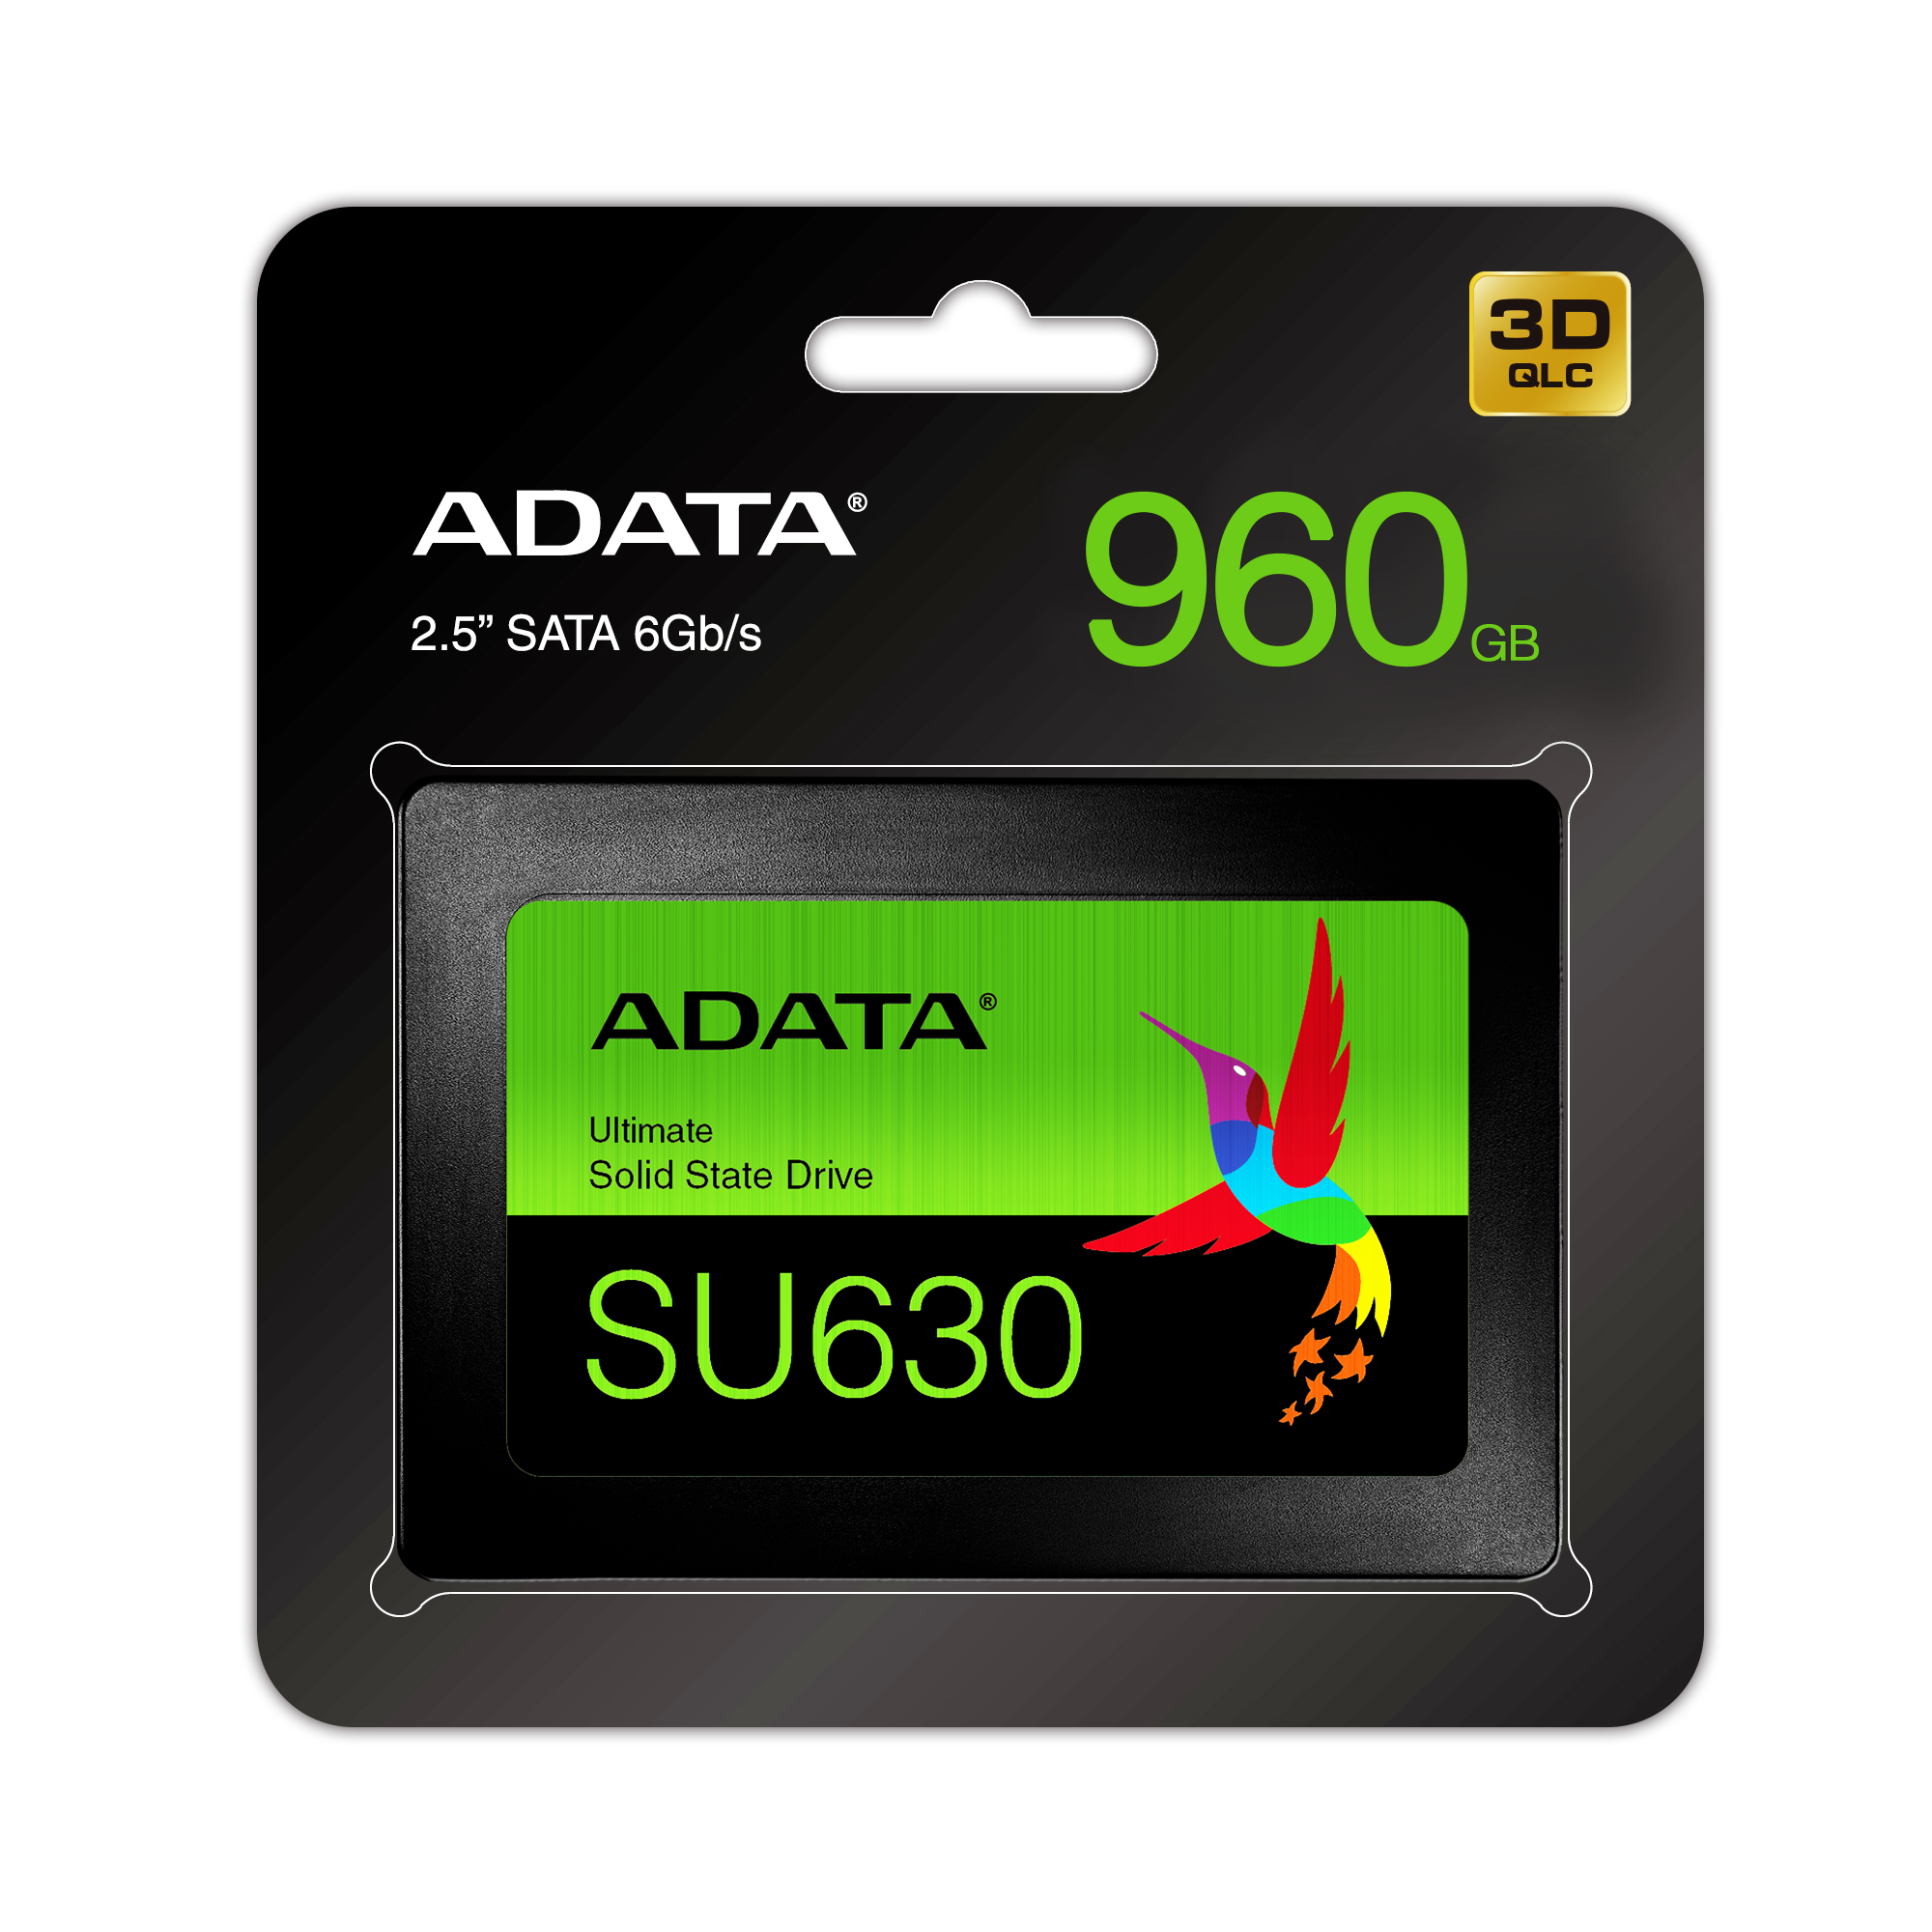 ADATA Unidad de Estado Sólido SSD SU630 960GB 3D NAND , SATA III,QLC,2.5